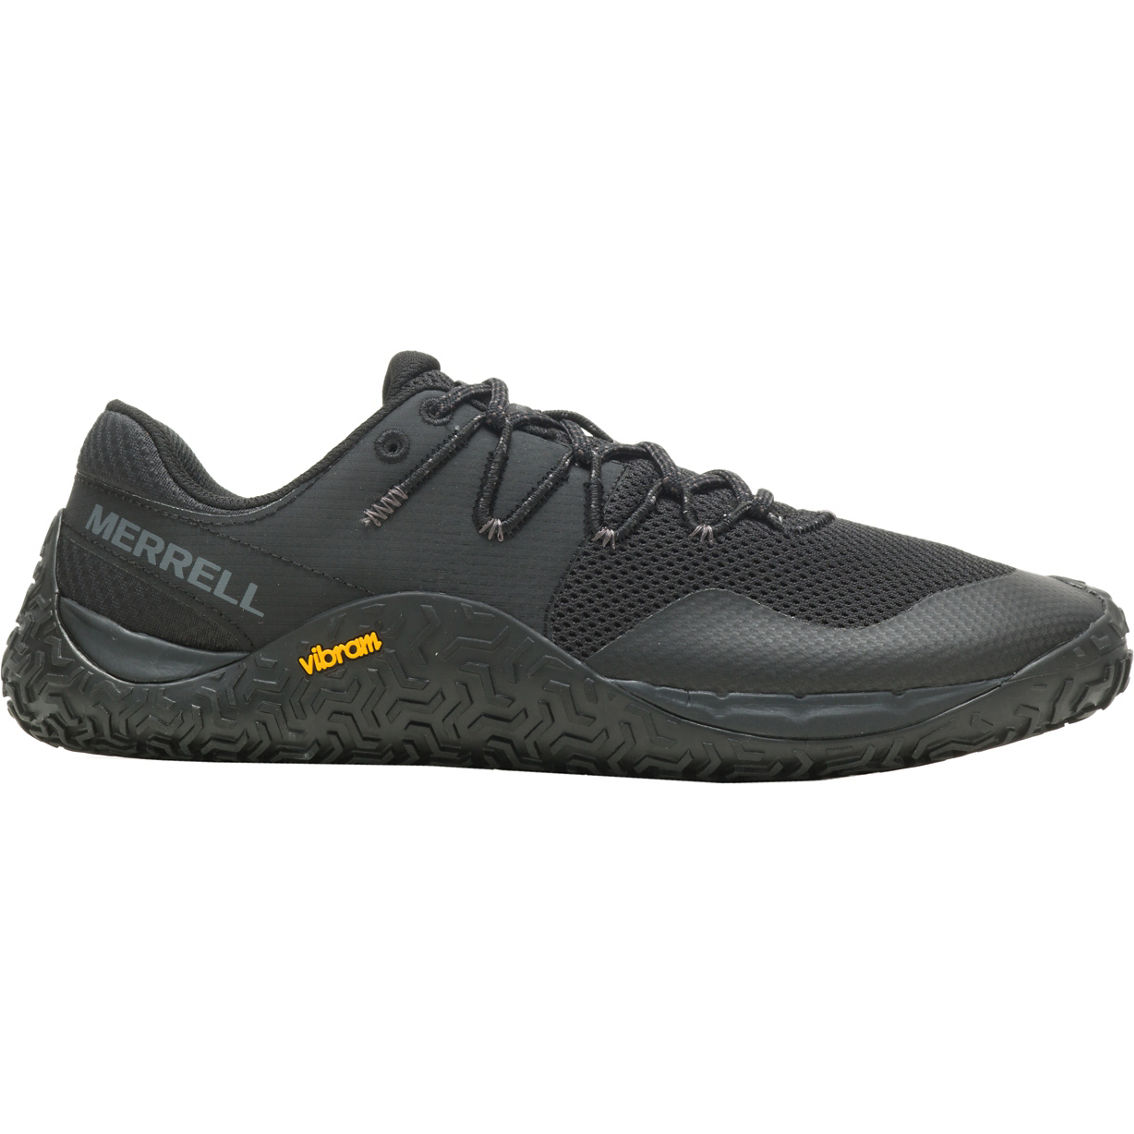 Merrell Men's Trail Glove 7 Shoes | Men's Athletic Shoes | Shoes | Shop ...